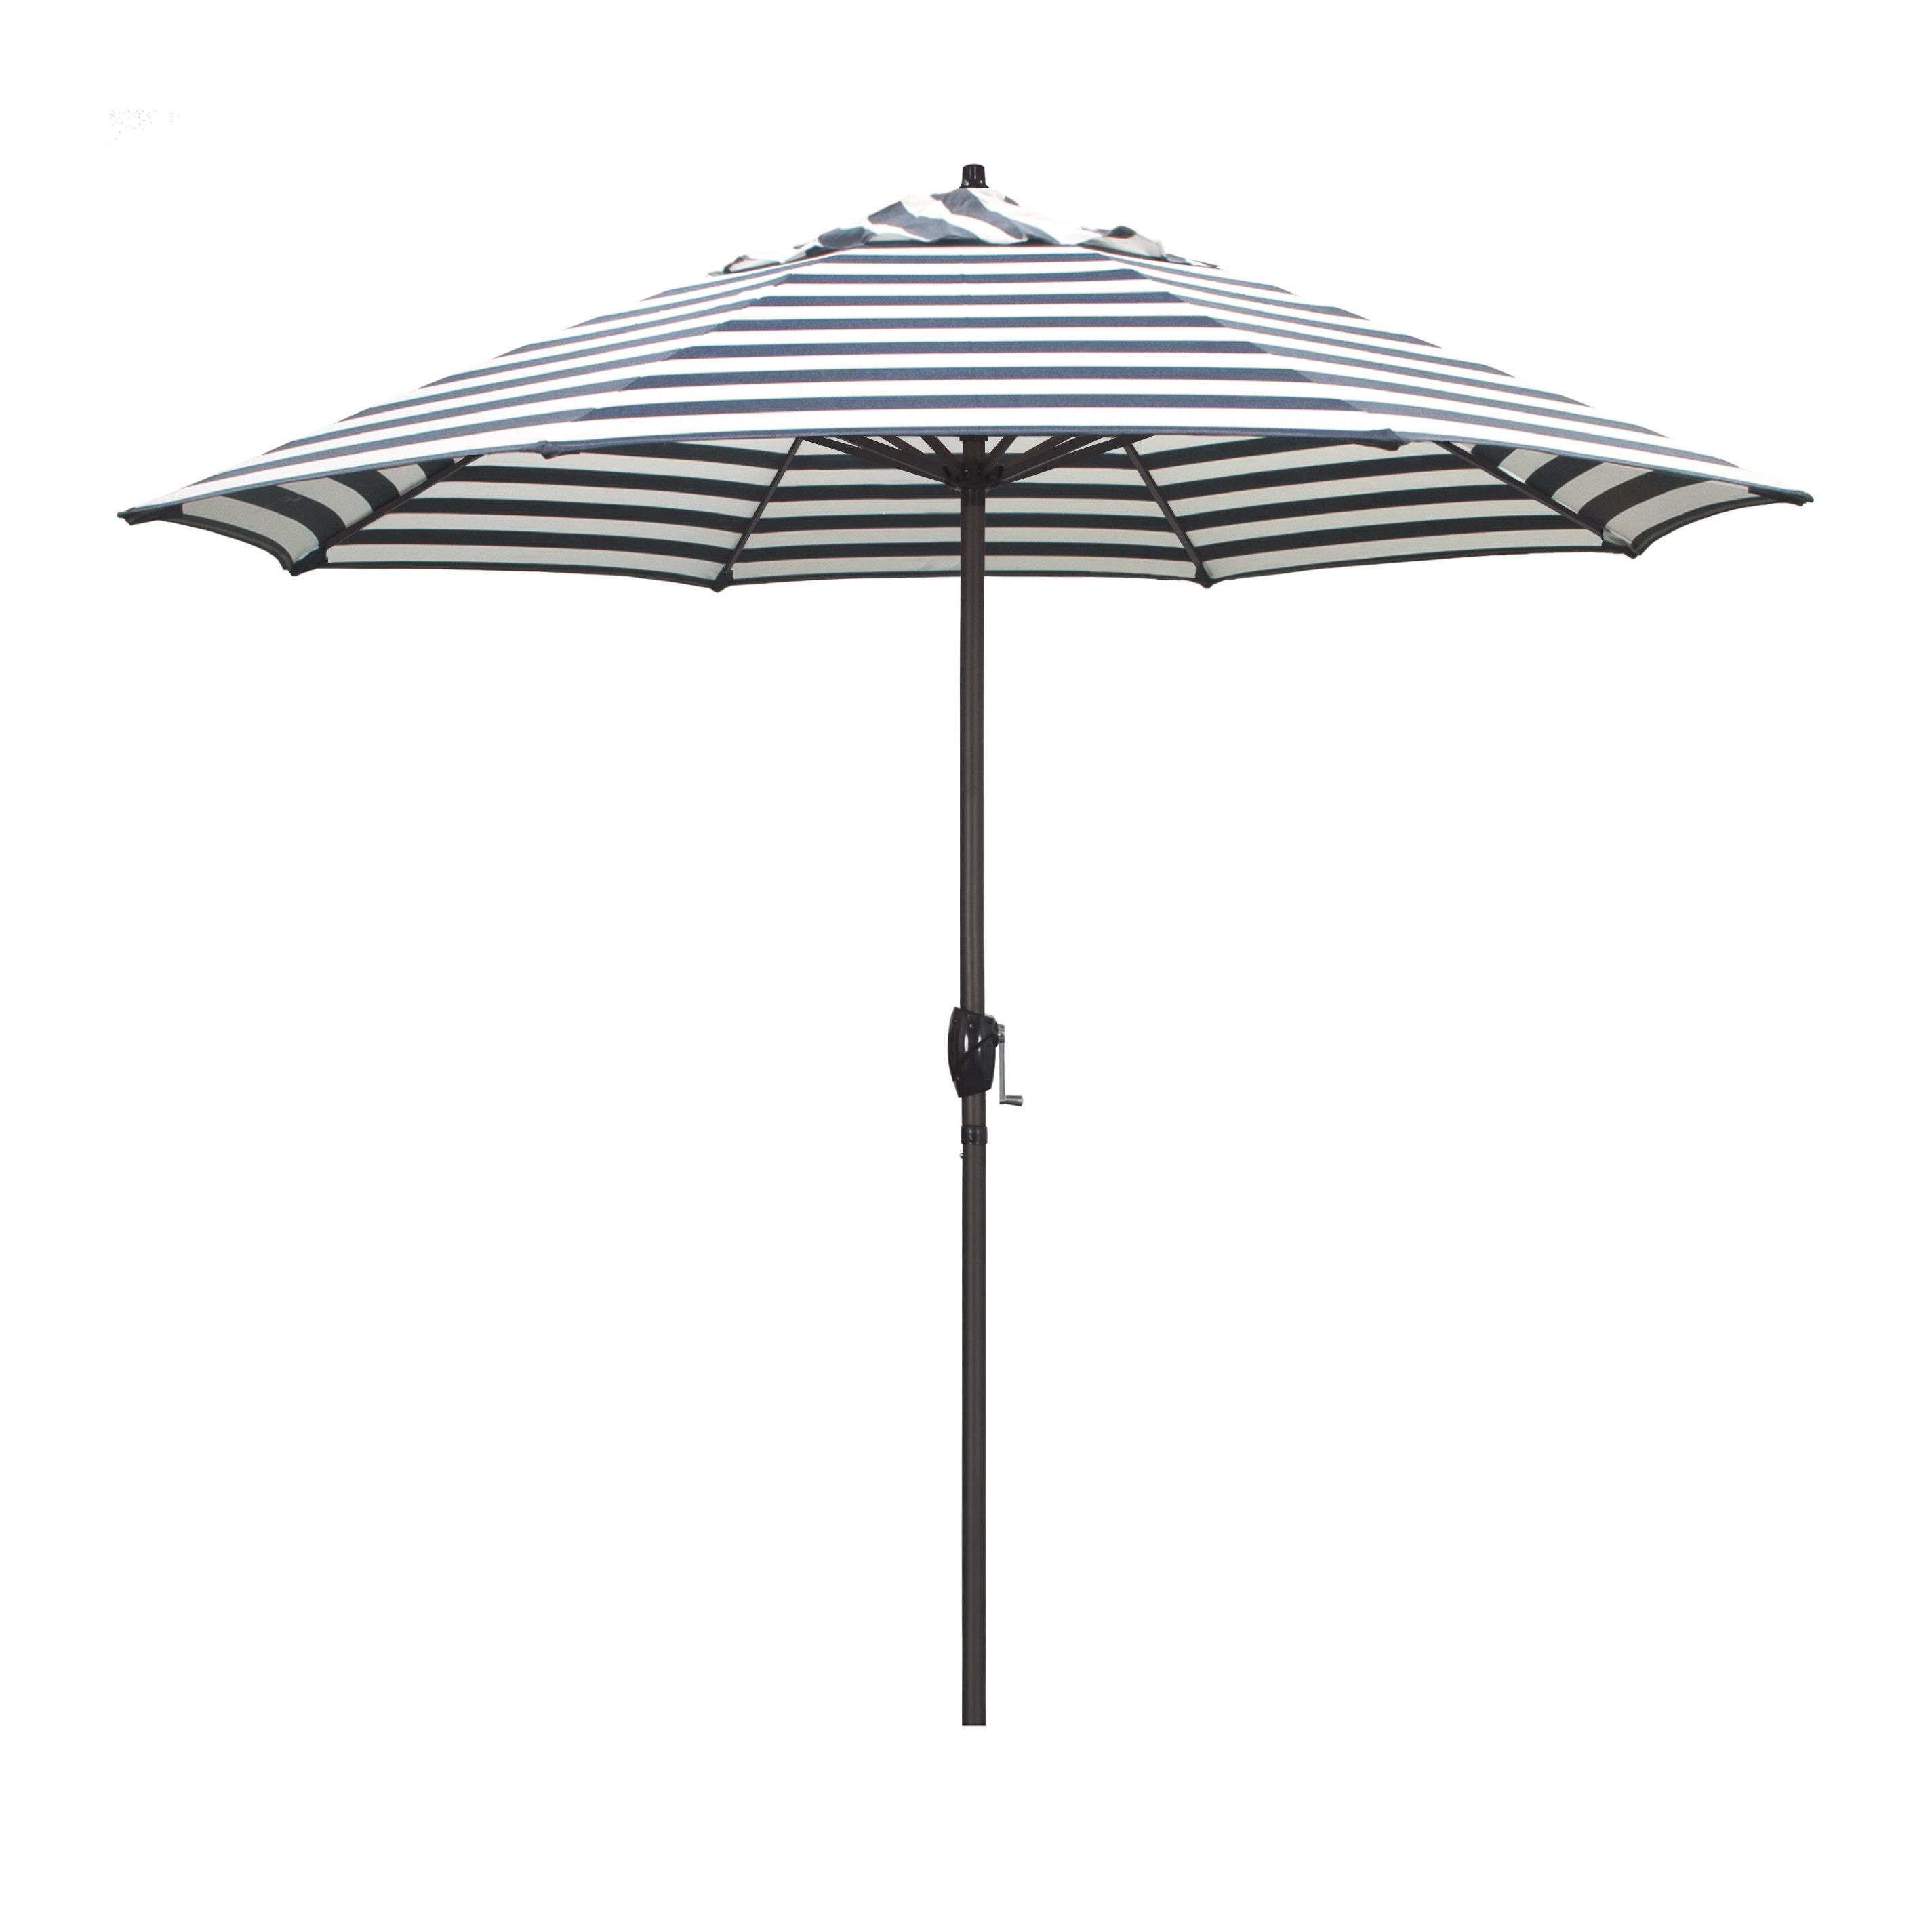 Cardine Market Umbrellas With Current Cardine 9' Market Umbrella (Photo 1 of 20)